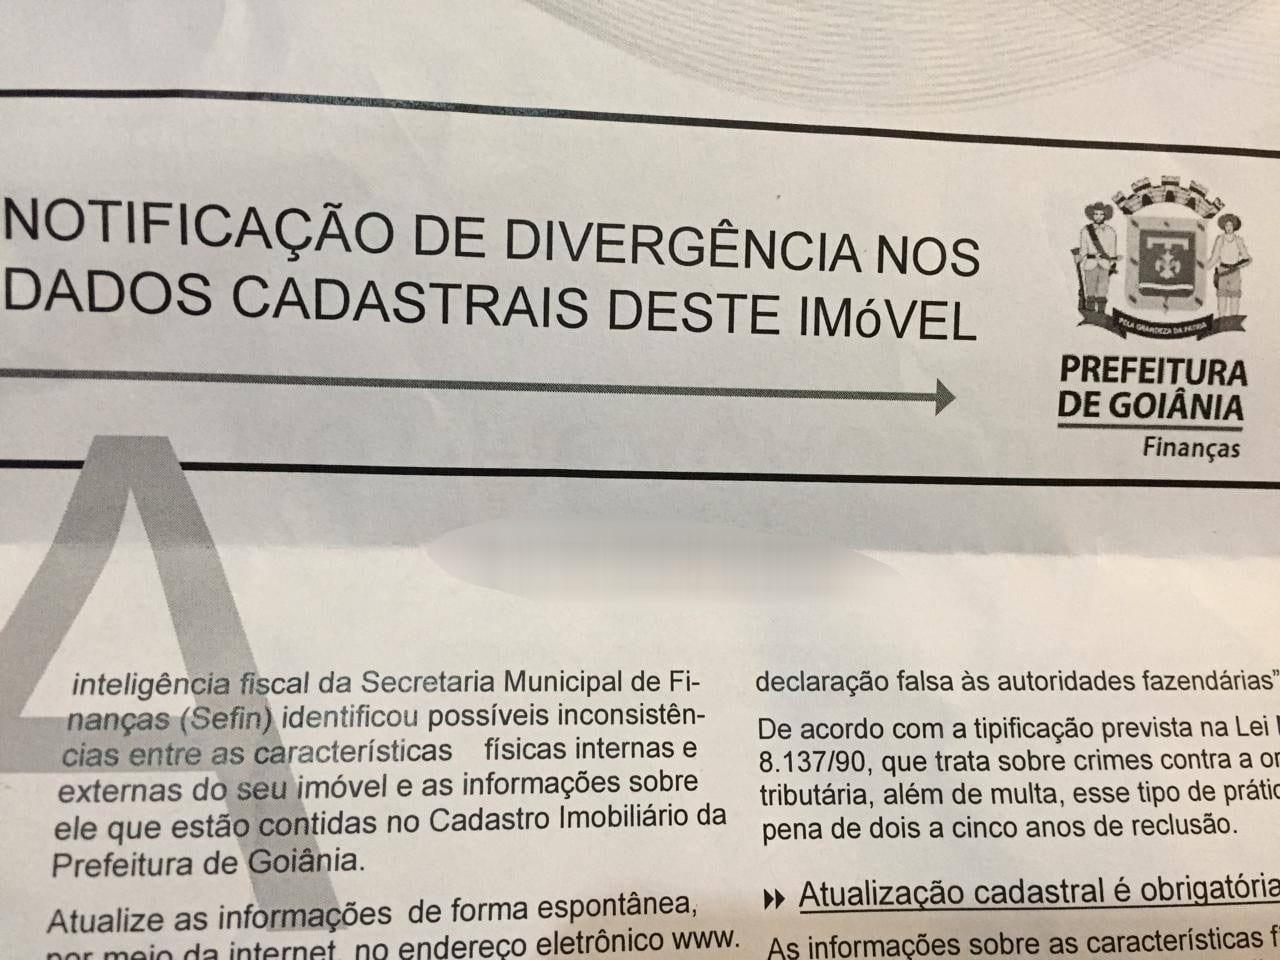 Moradores de Goiânia tem até dia 20 de dezembro para fazer a regularização cadastral do imóvel